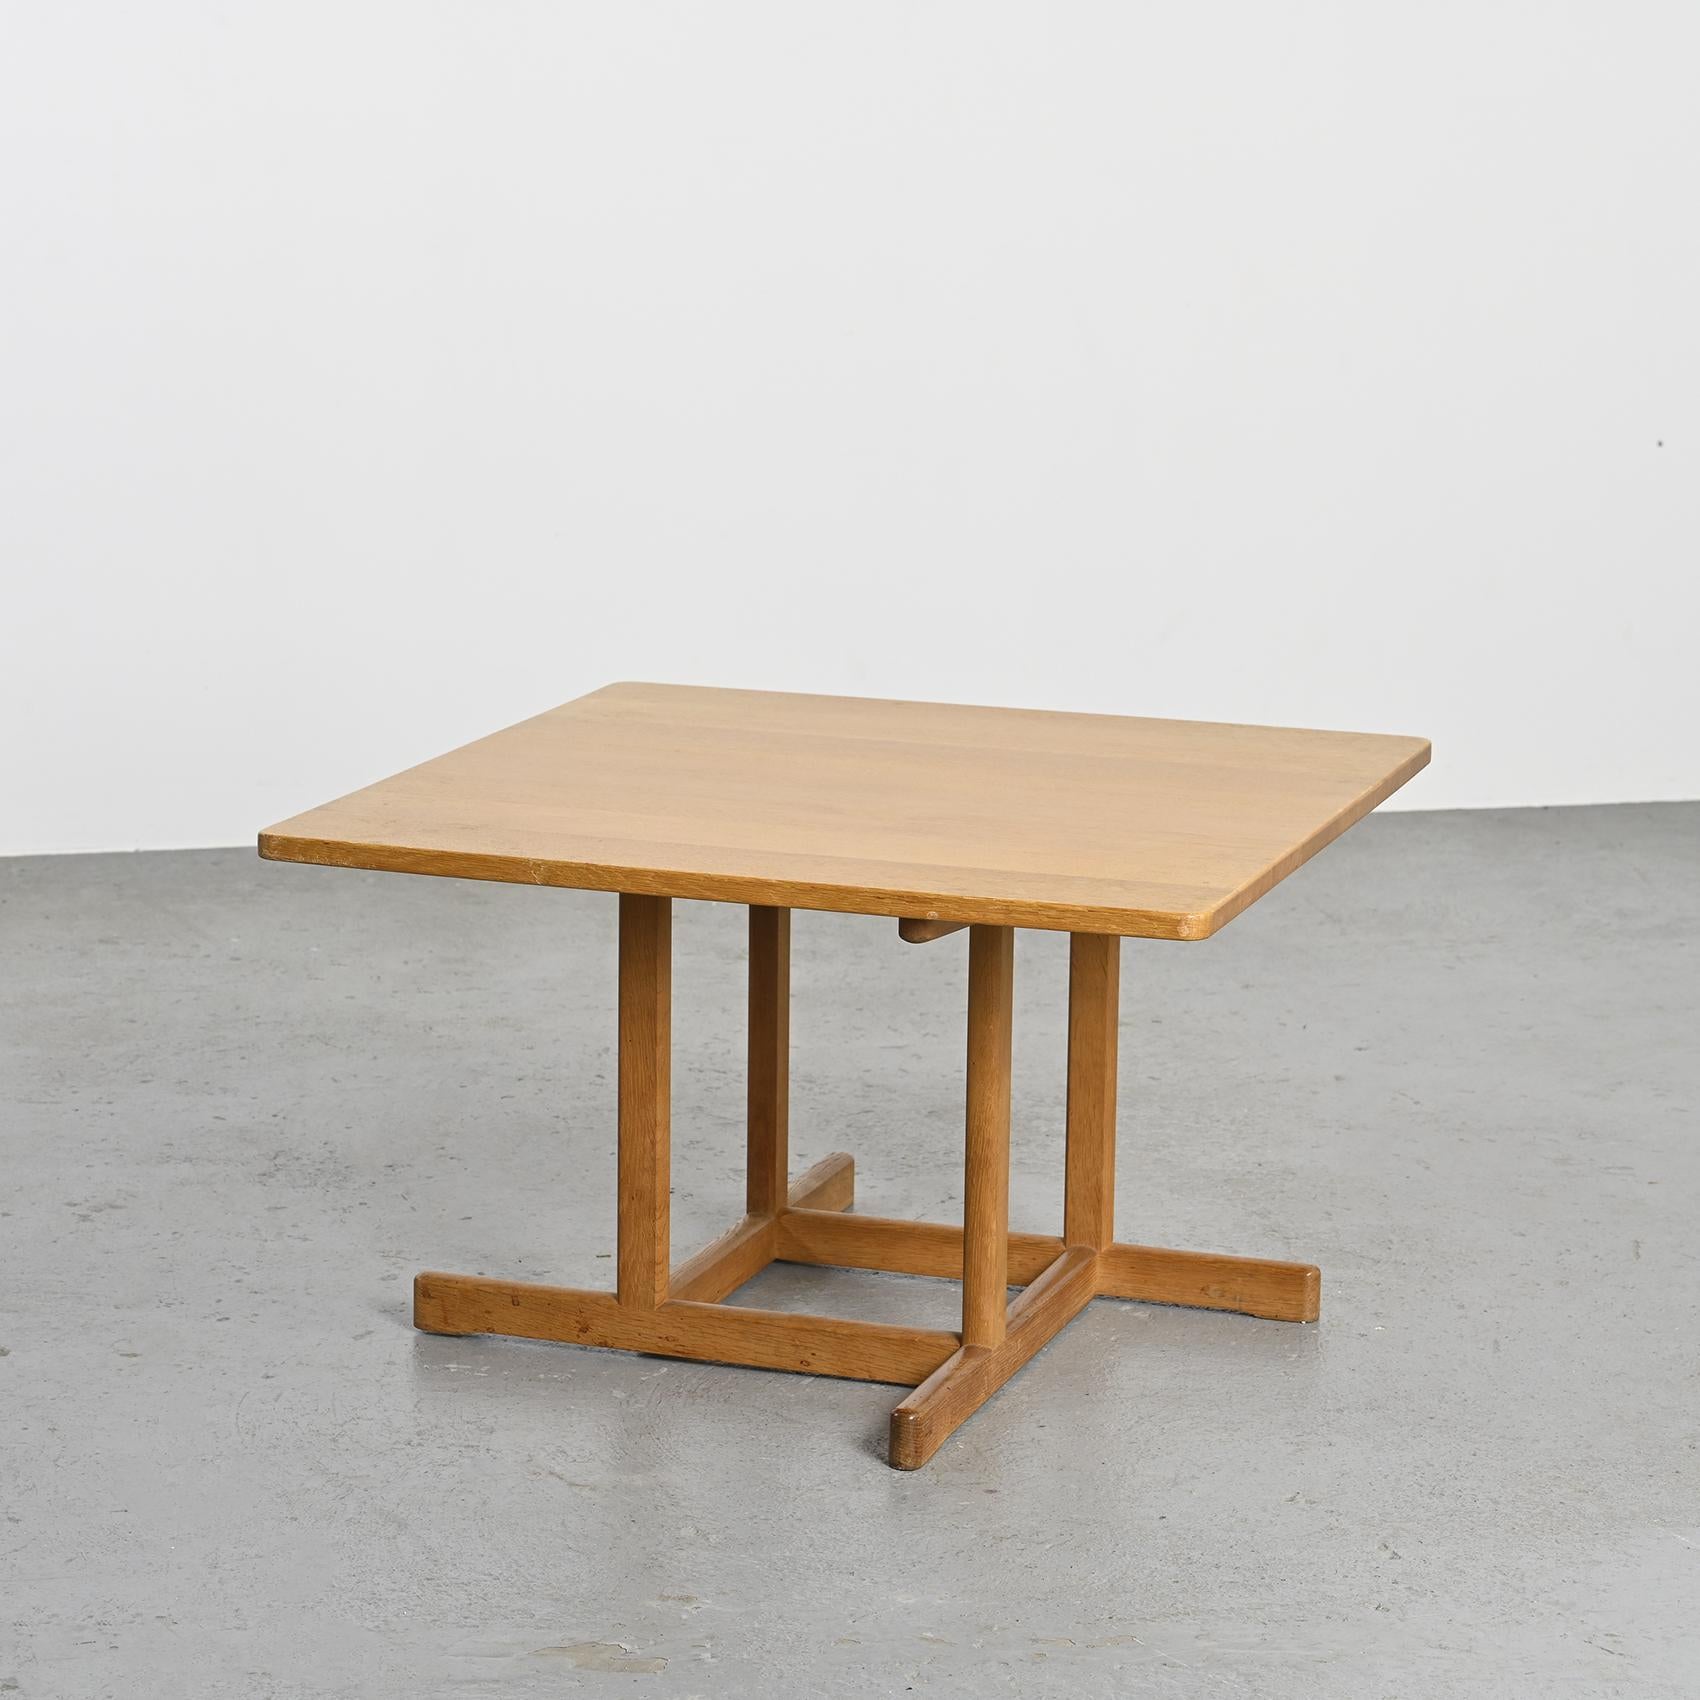 Ensemble de fauteuils, modèles 2207 et 2204, par Børge Mogensen, table basse scandinave modèle 271 par le célèbre designer Børge Mogensen, elle a été fabriquée au Danemark à la fin des années 1950.

Entièrement fabriqué en chêne massif, le plateau